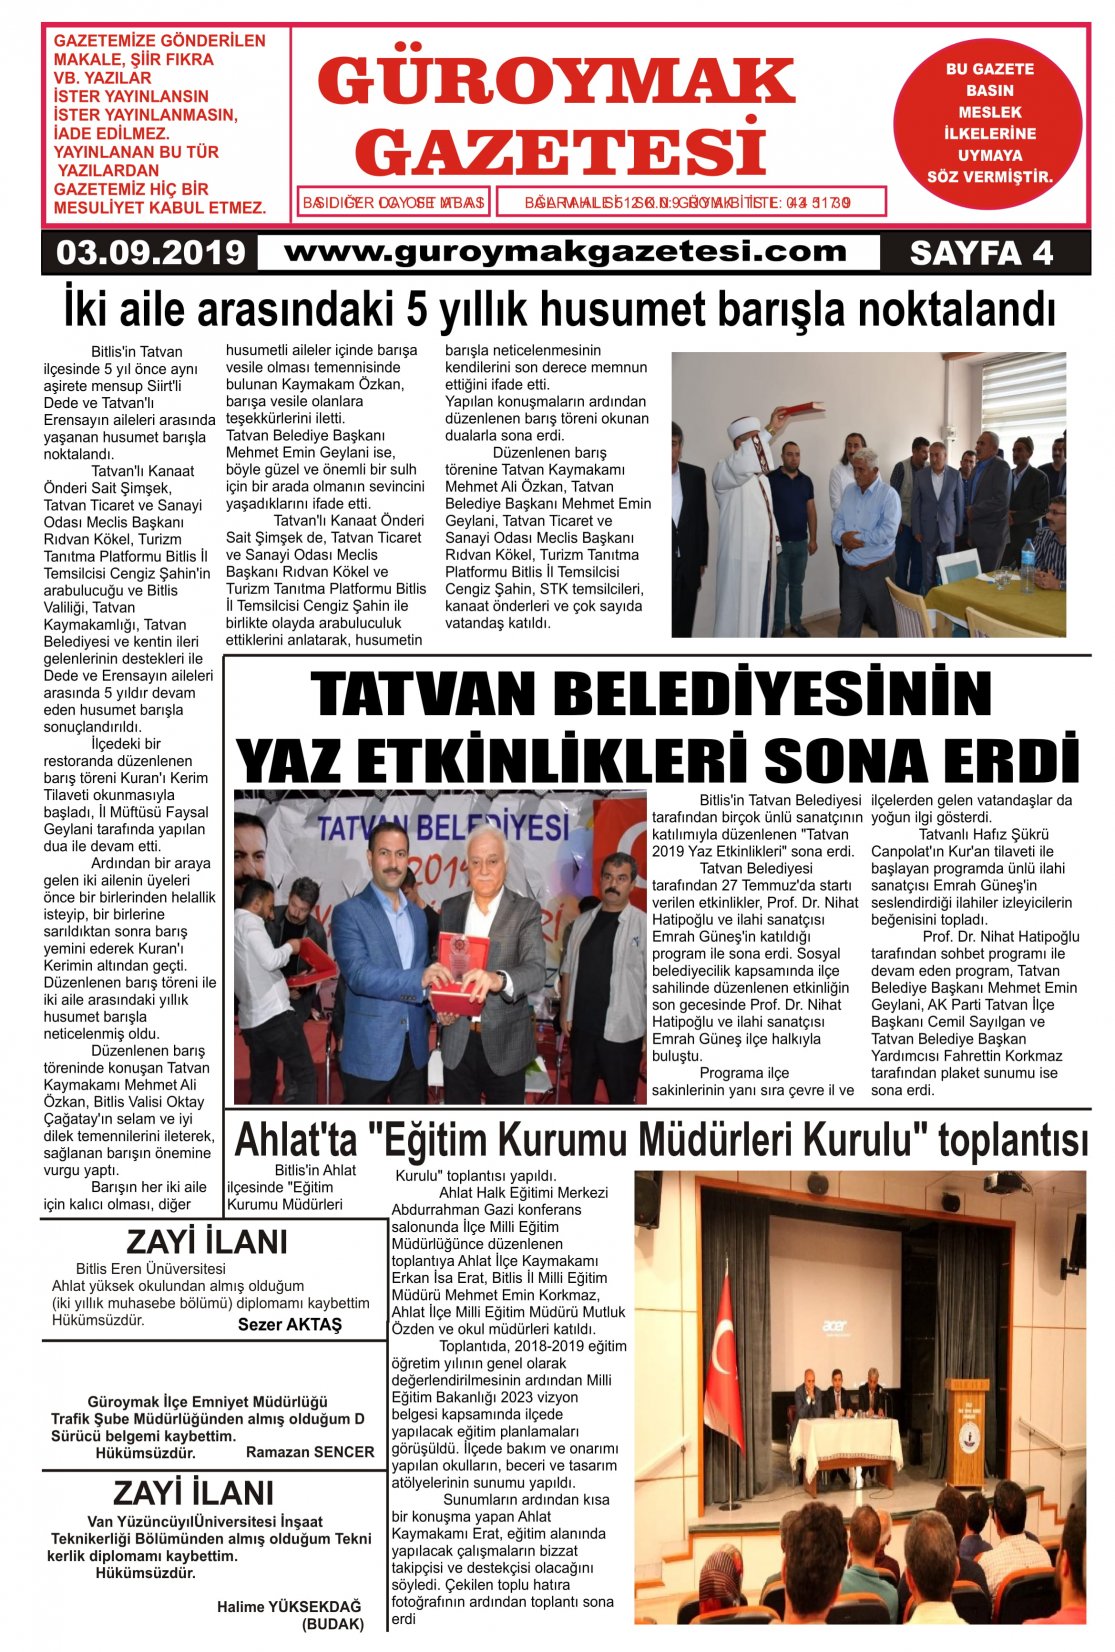 Güroymak Gazetesi 4.jpg Sayılı Gazete Küpürü